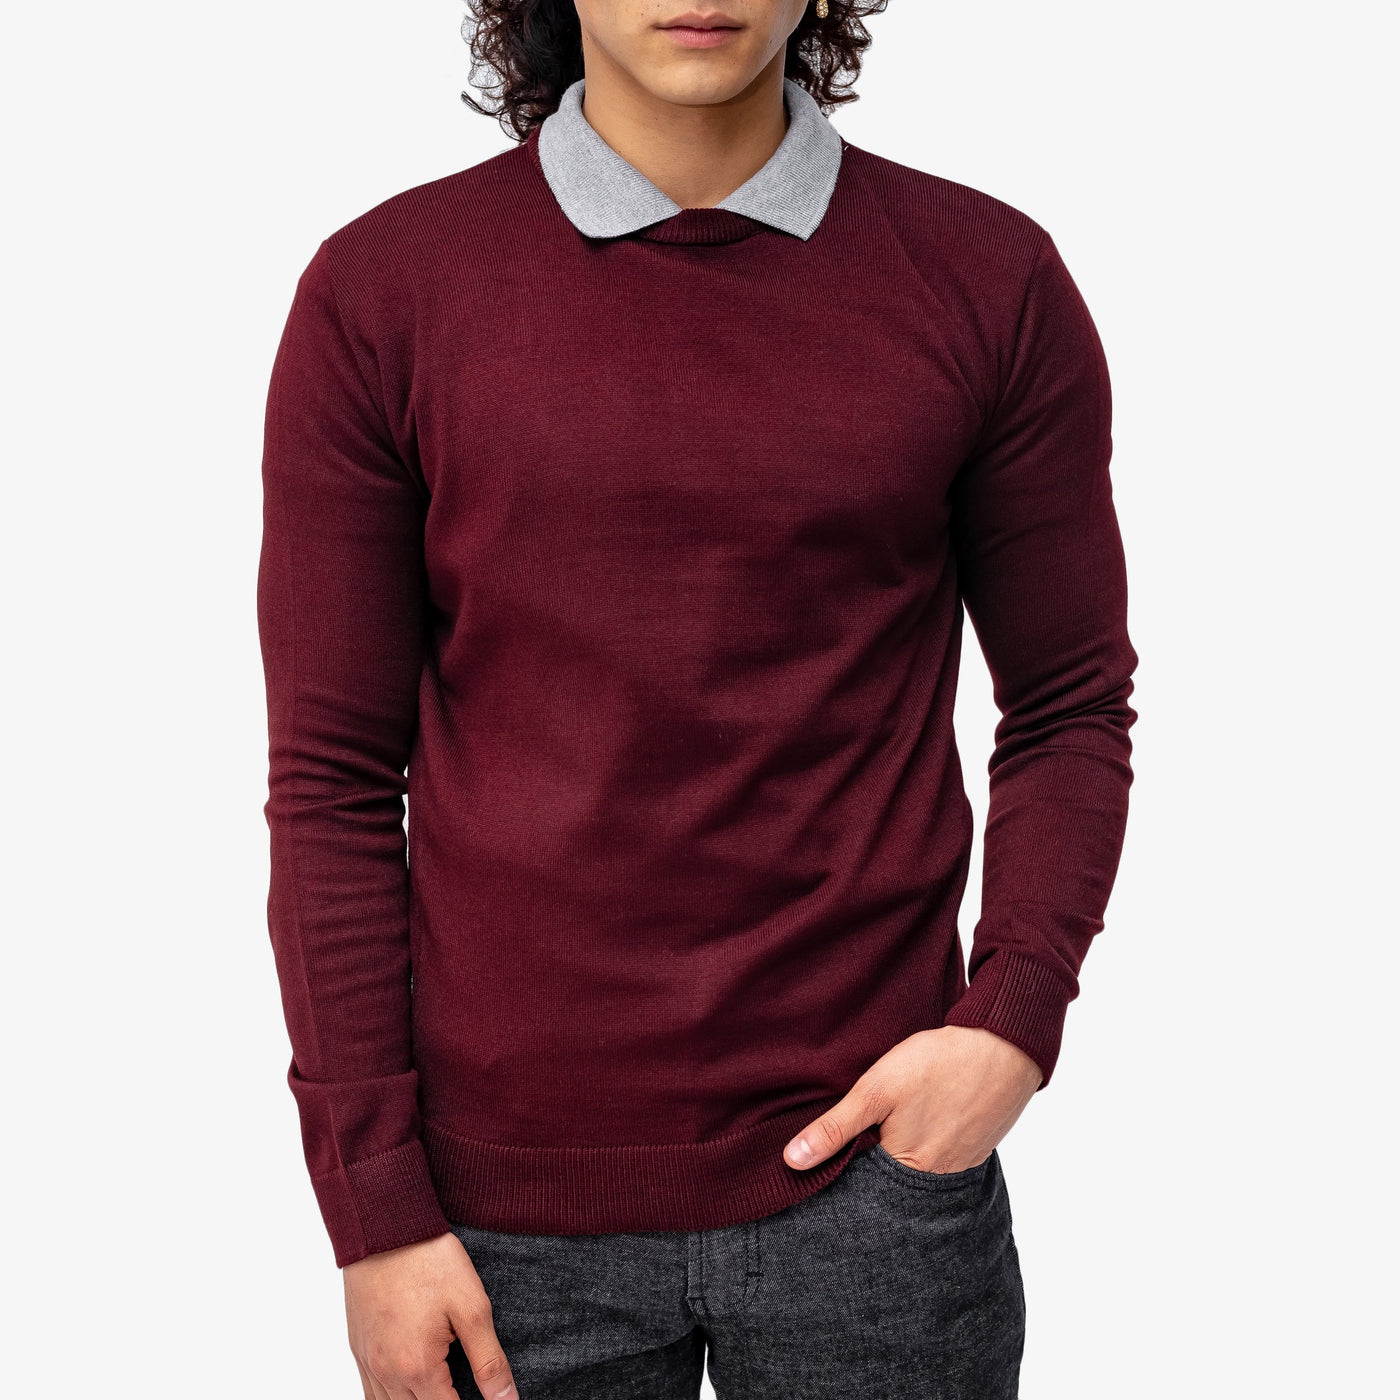 Suéter tejido - cuello redondo - corinto